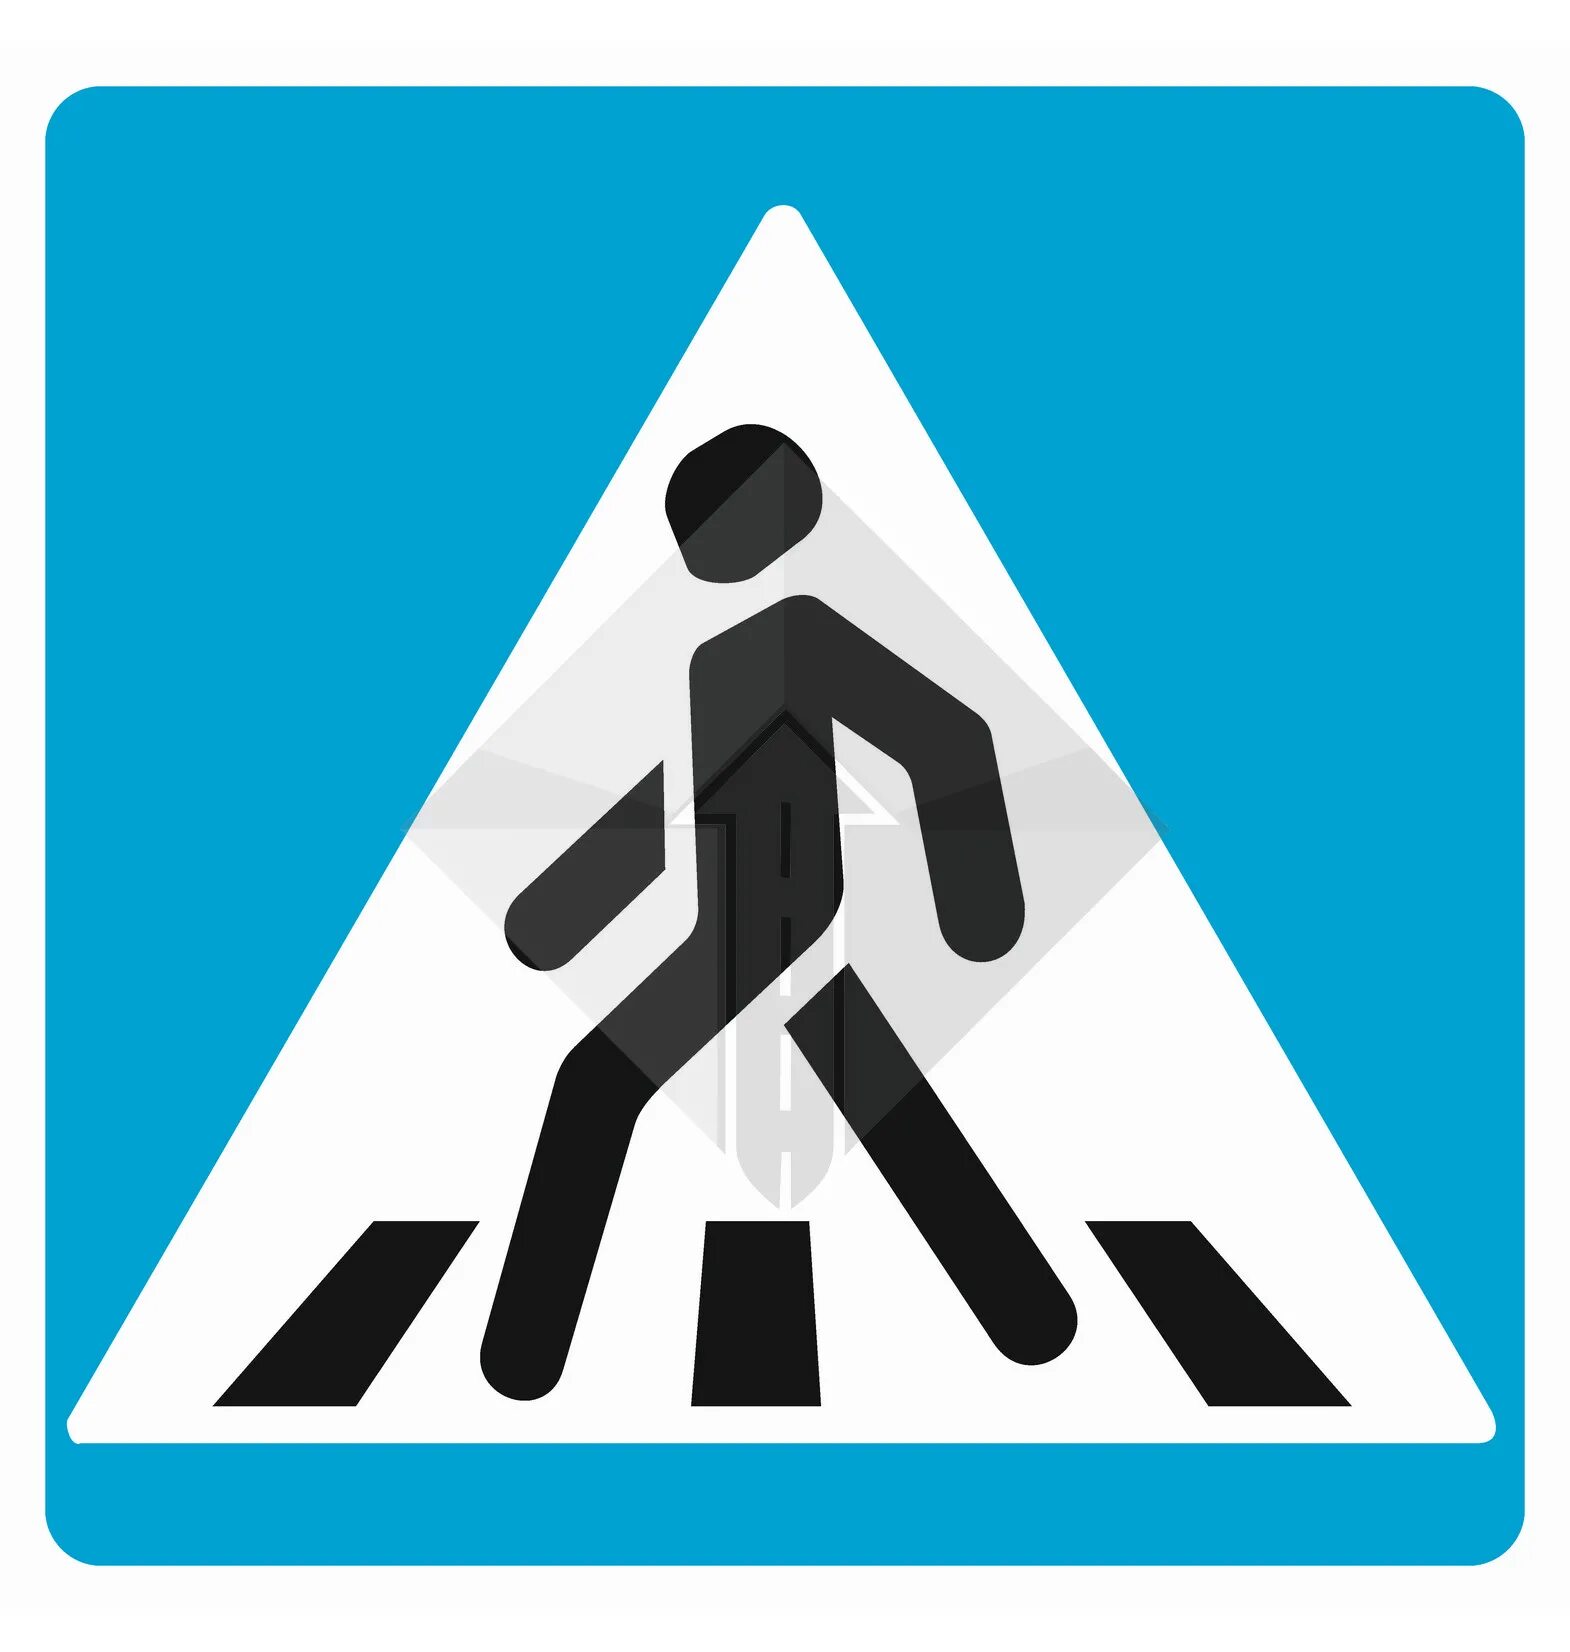 Знак пешехода в треугольнике. Дорожный знак пешеходный переход 5.19.2. Пешеходный переход знак 5.19.1. Дорожный знак 5.19.1 900*900, пленка Тип а. Знаки 1.22, 1.23, 5.19.1 и 5.19.2.